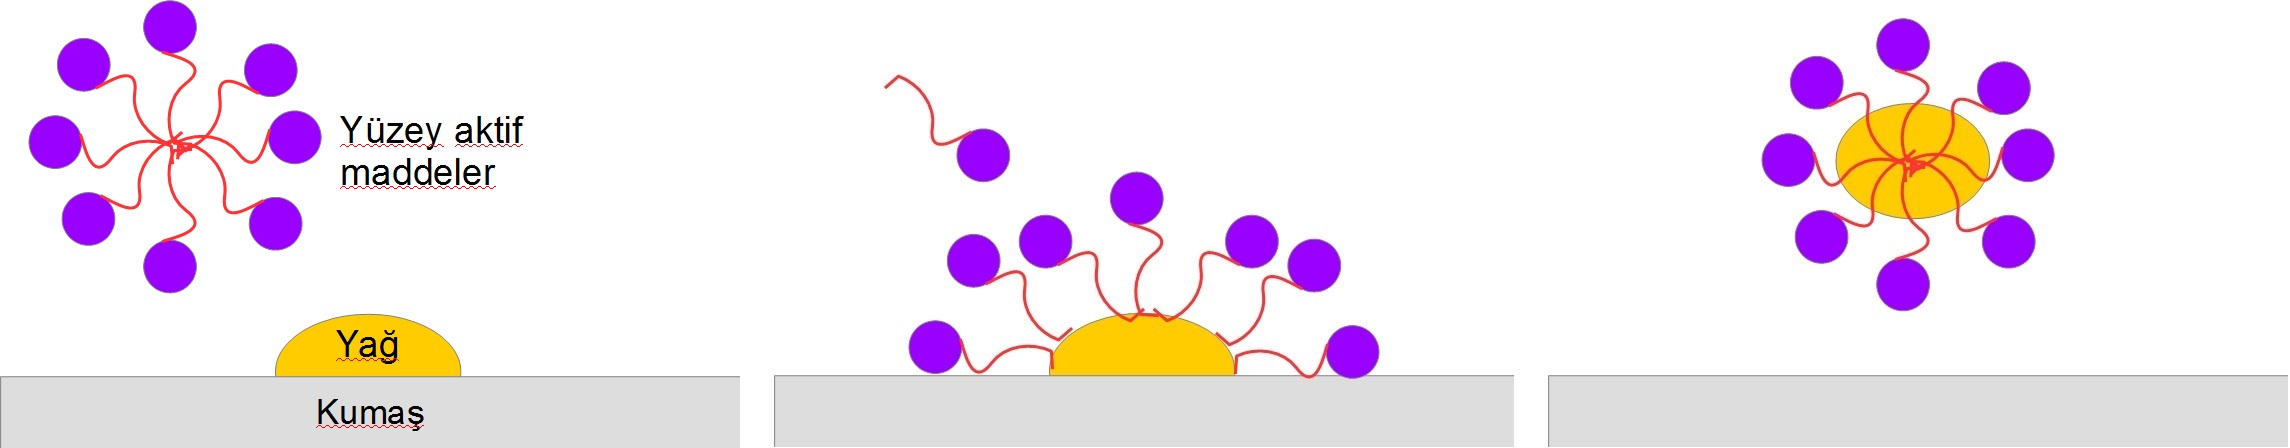 Resim 3. Deterjanlardaki yüzey-aktif maddeler sayesinde yağ lekesi olan bir kumaşın temizlenişi. yüzey-aktif maddelerin susever (mavi) ve yağsever (kırmızı) kimyasal grupları vardır. Yağsever gruplar sudan kaçmak istedikleri için oluşan kürenin içine saklanırlar (sol). Eğer ortamda yağ molekülleri varsa, yüzey-aktif maddeler tek başlarına durmak yerine bu yağ moleküllerine yapışırlar (orta). Yüzey-aktif maddelerle kaplanmış yağ moleküllerinin artık kumaş üstünde durmak gibi bir zorunlulukları yoktur, çünkü yeni halleri suyla uyumludur. Yağ molekülleri kumaş yüzeyinden kopar ve oluşan kürenin içine hapsolurlar (sağ). (Resim yazar tarafından Açık Bilim için hazırlanmıştır.) 